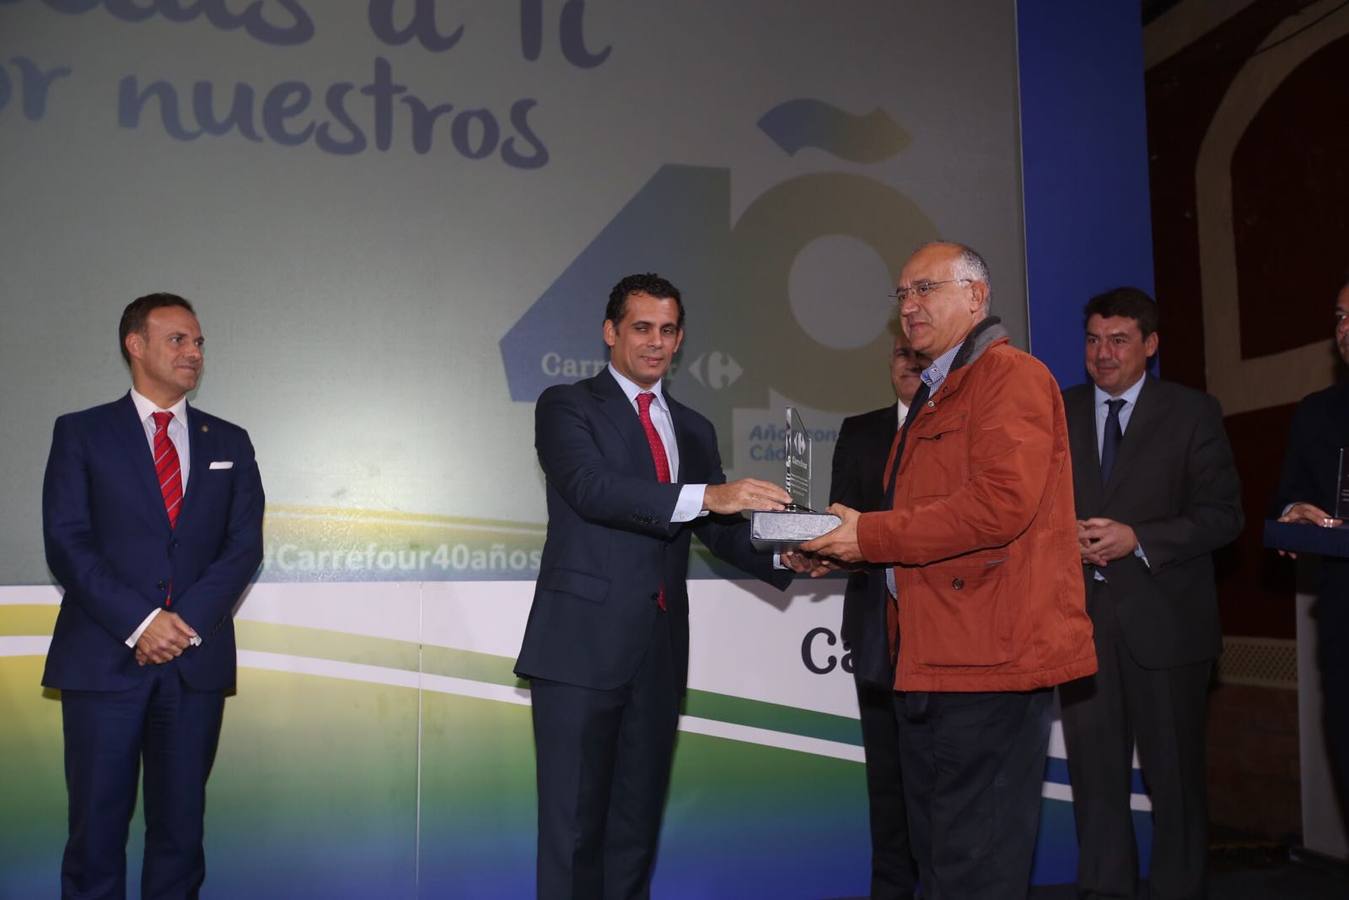 Carrefour celebra 40 años en Cádiz